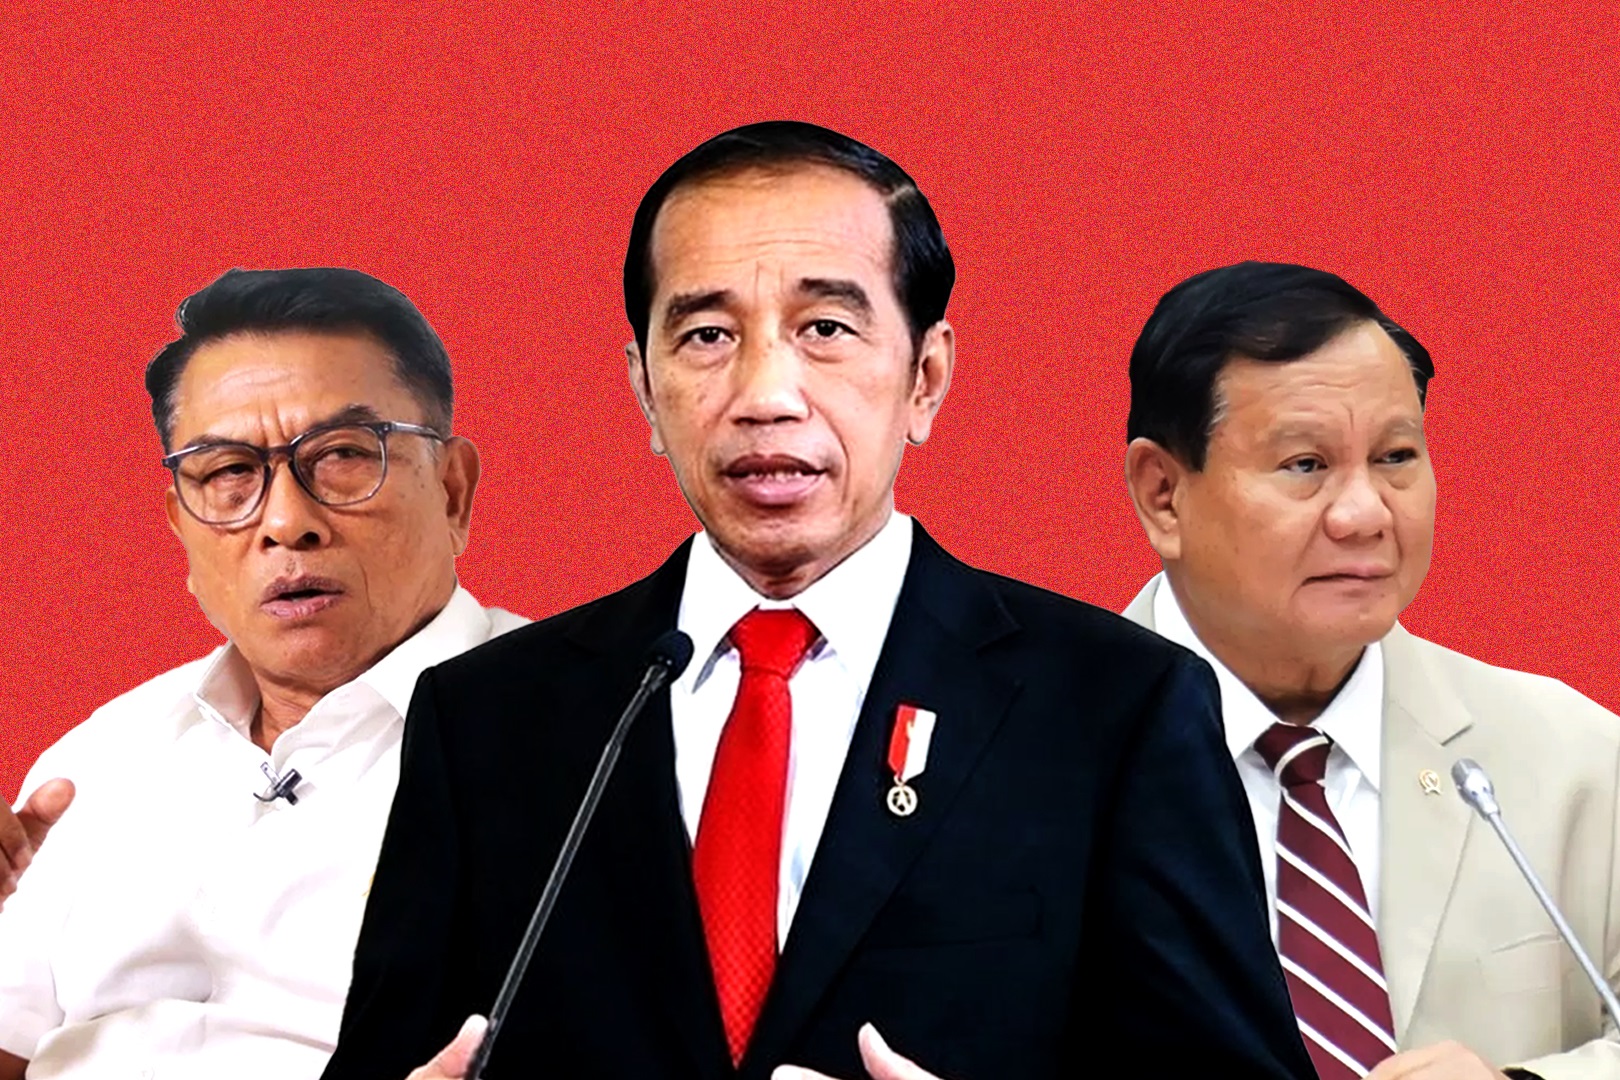 JK Sindir Jokowi Soal Netralitas, Moeldoko Bilang Begini